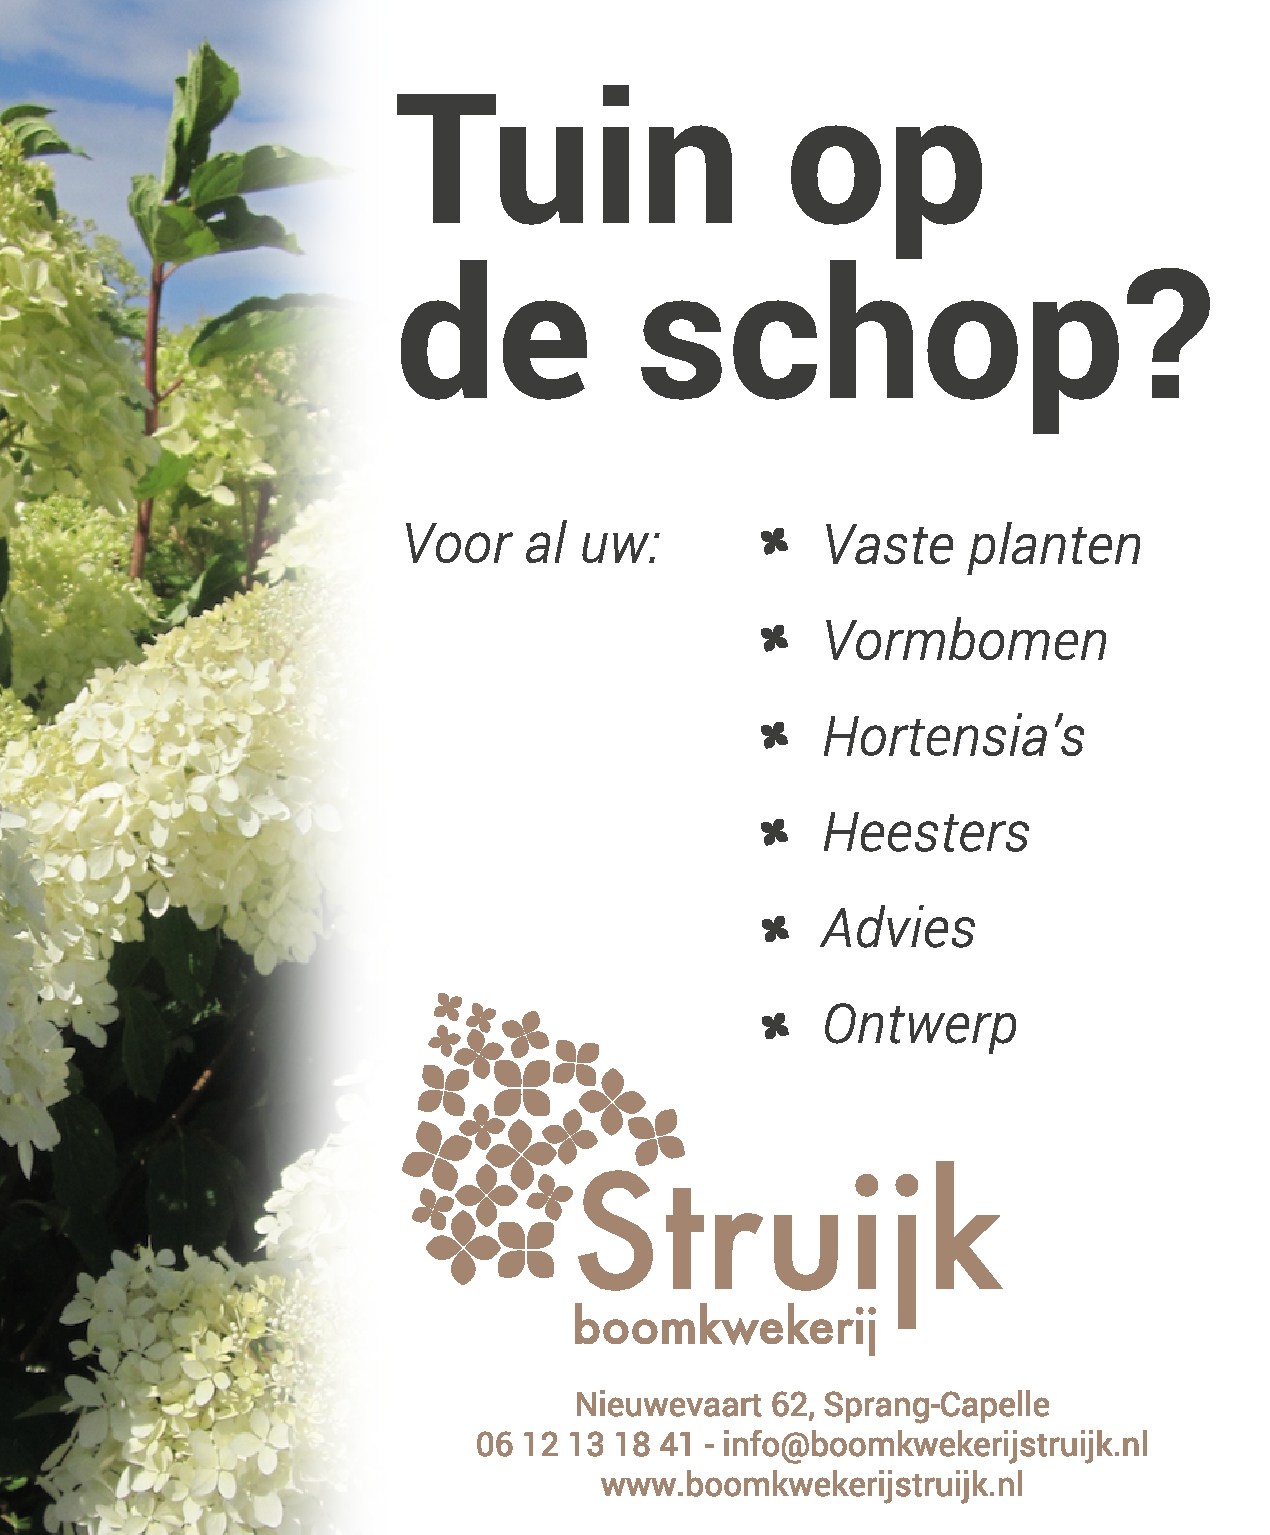 Struijk kwekerij boomkwekerij sprang-capelle nieuwevaart waalwijk heesters vaste planten vormbomen hortensia advies ontwerp beplantingsplan